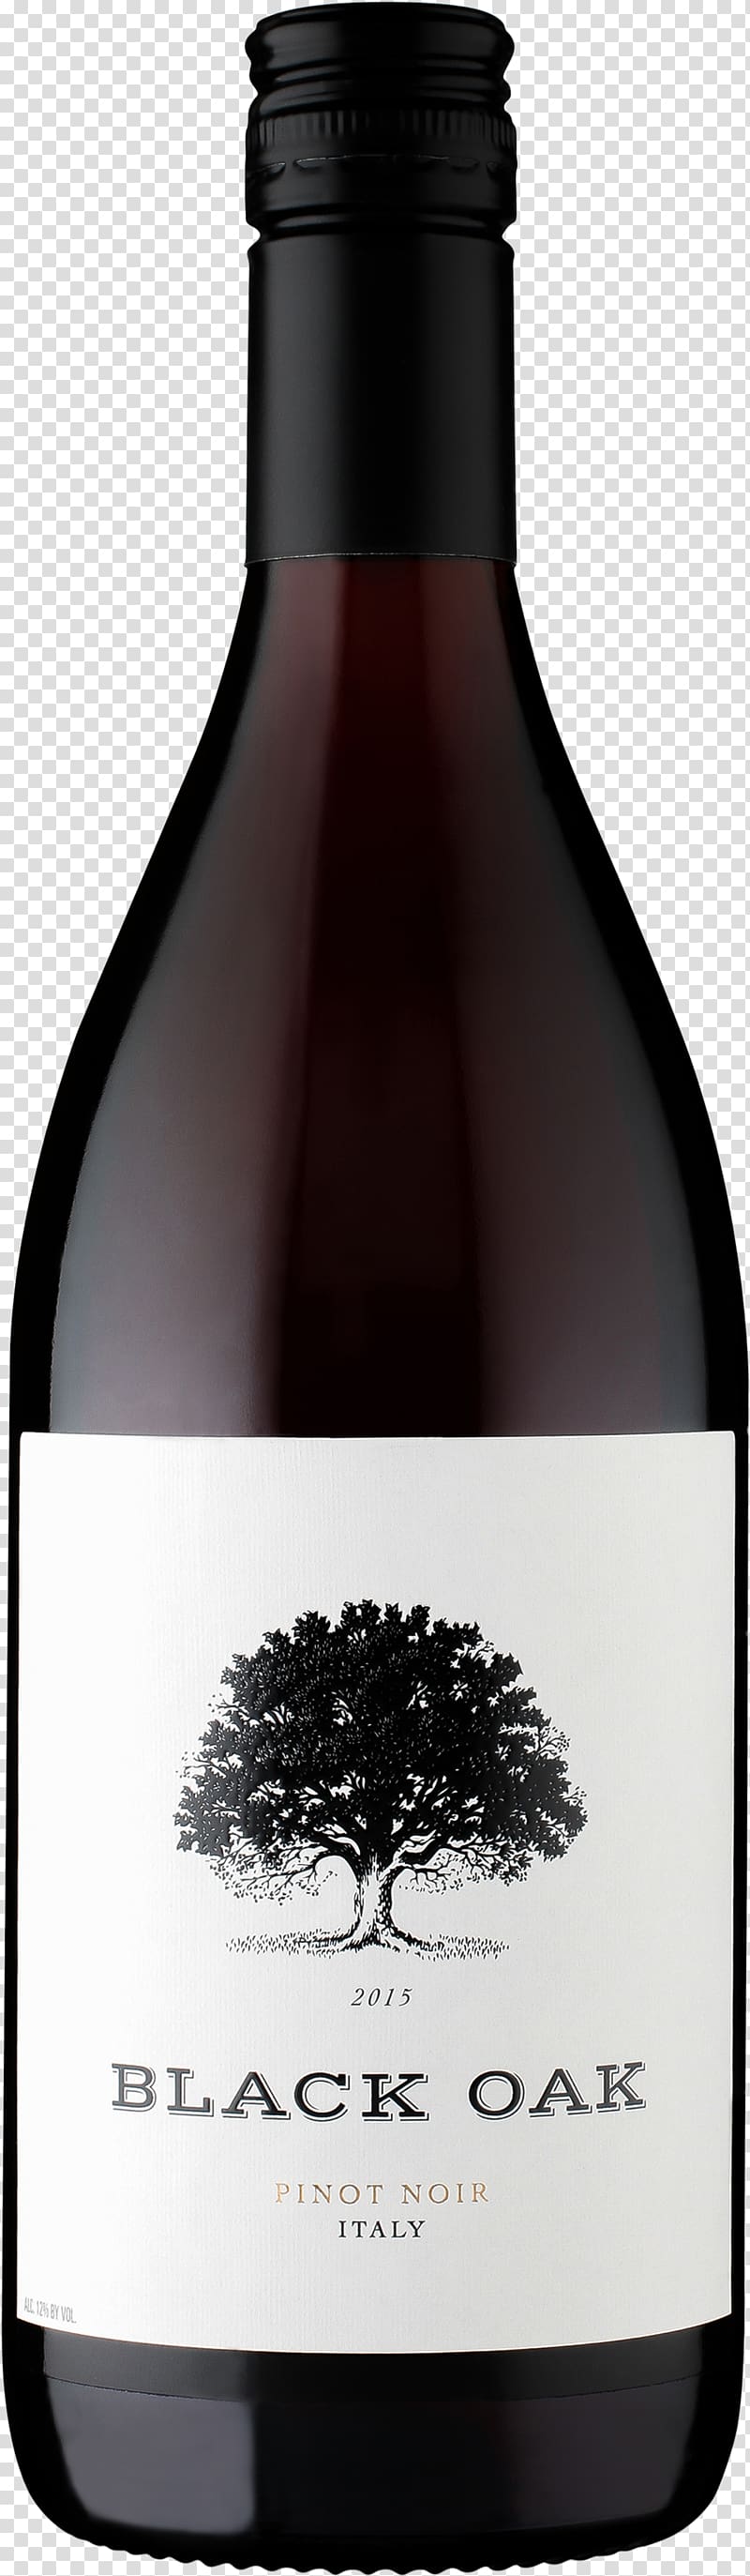 Wine Merlot Cabernet Sauvignon Sauvignon blanc Muscat, oak transparent background PNG clipart